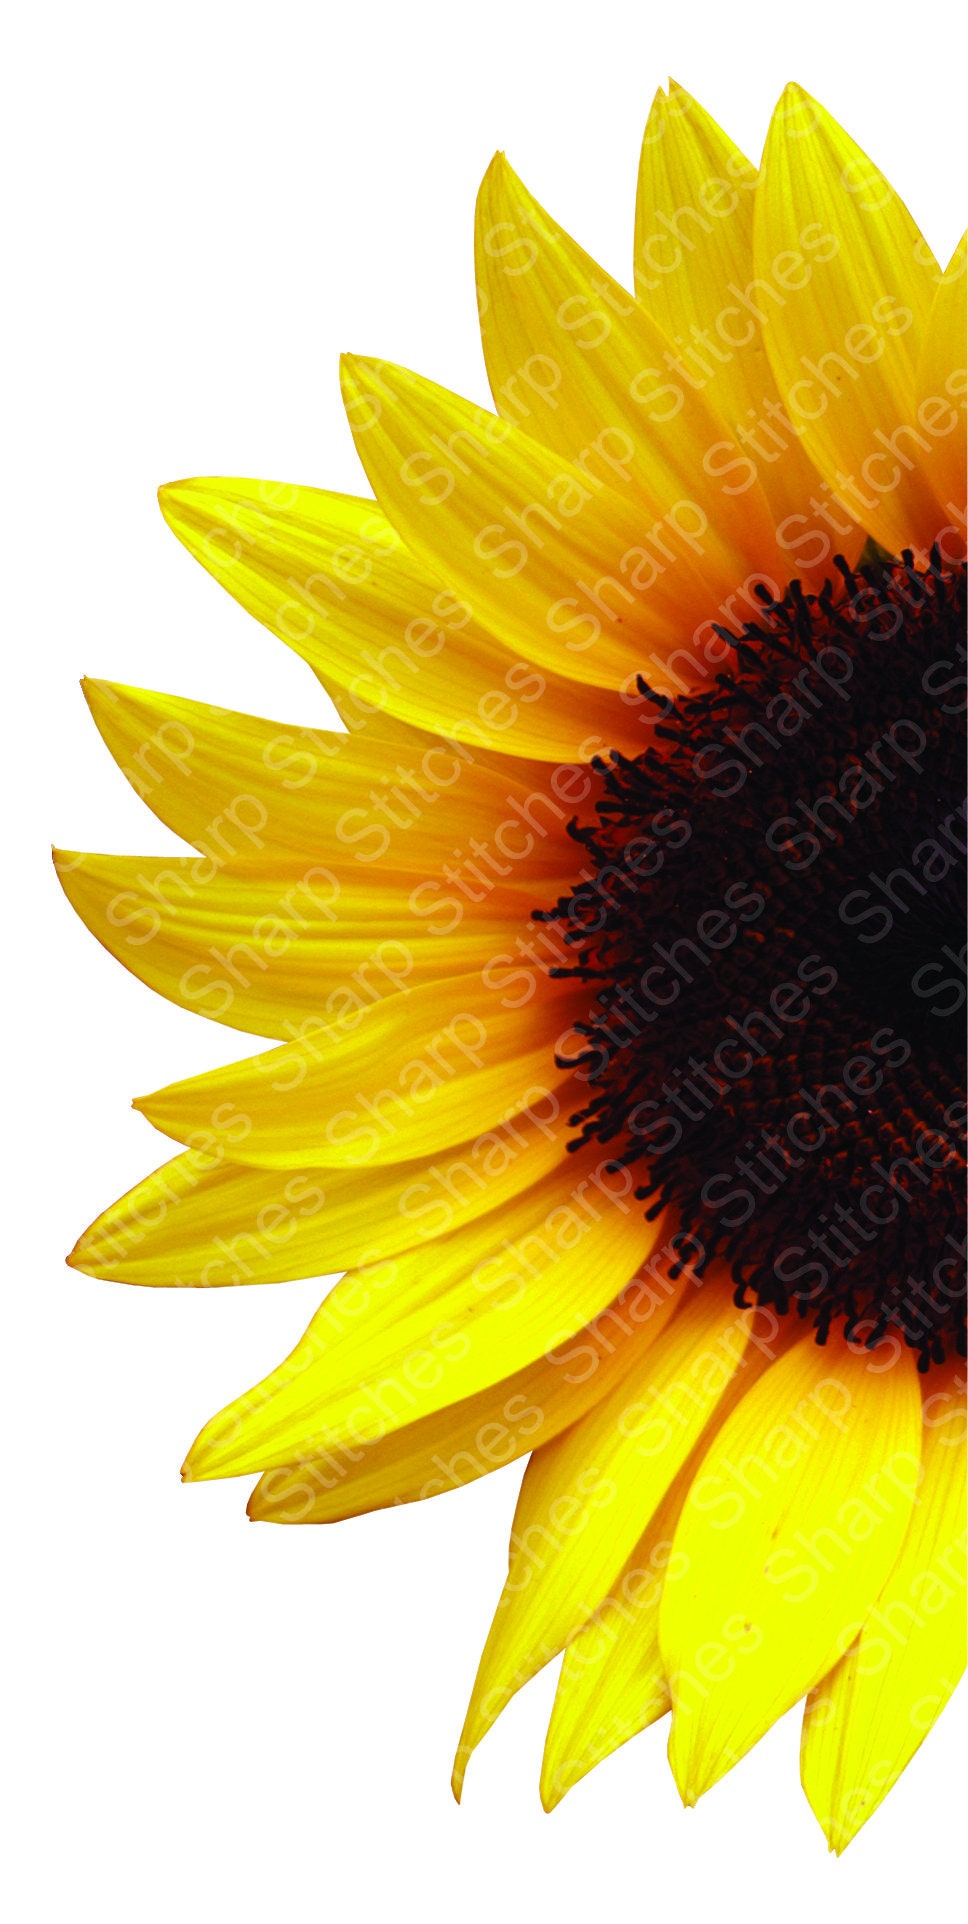 Download Free Svg Half Sun Flower File For Cricut - King SVG 500 ...